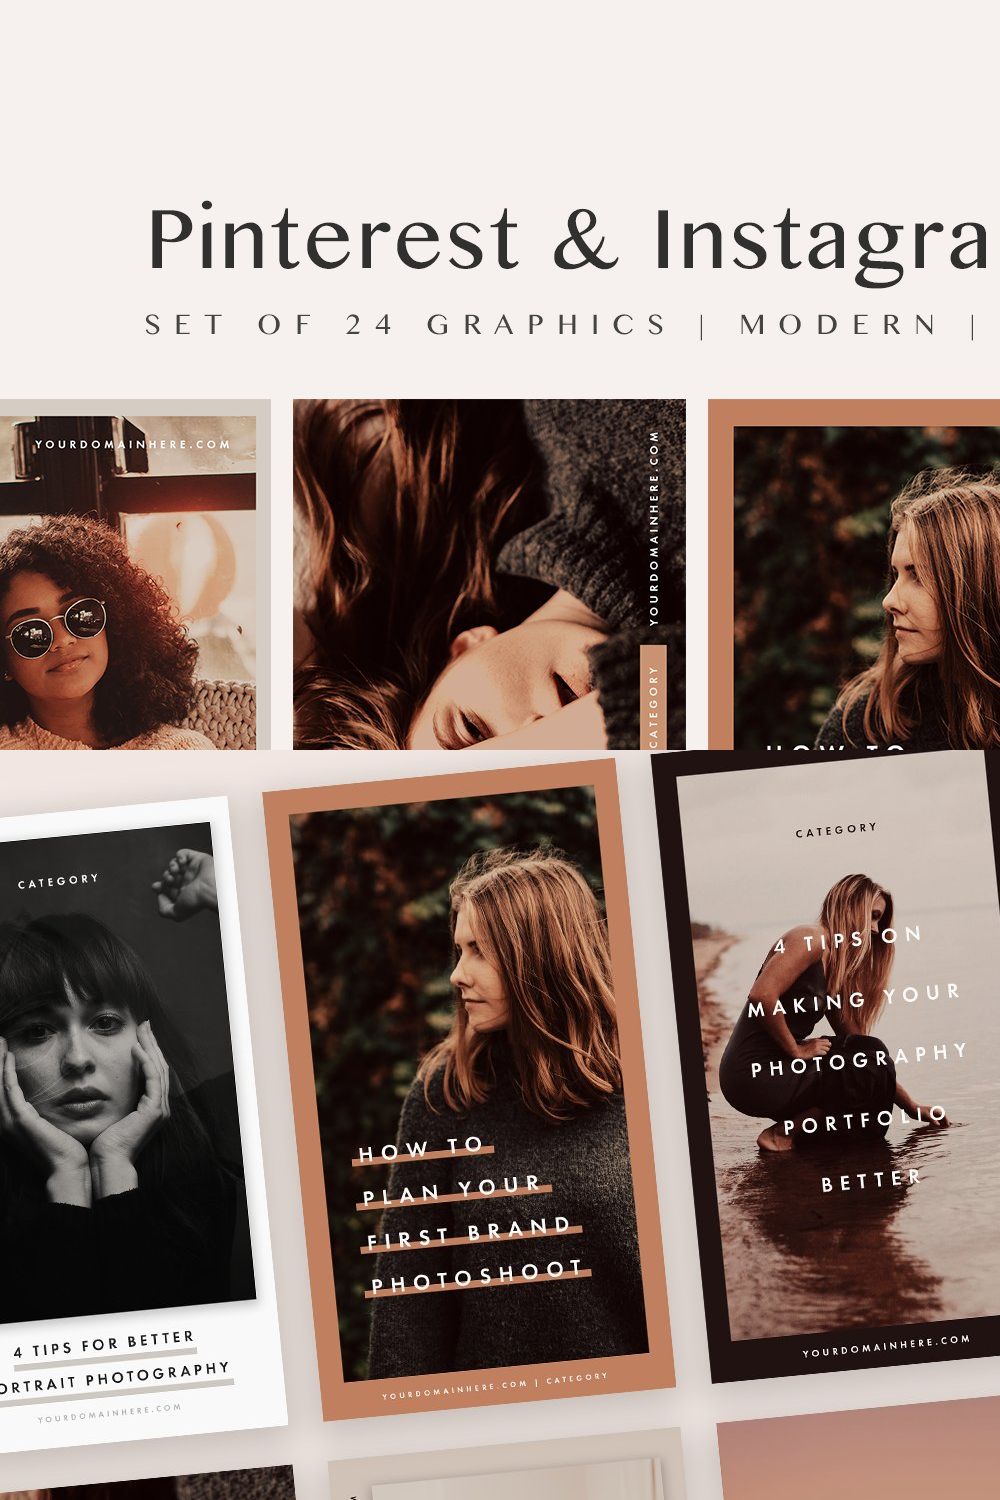 Pinterest & Instagram Bundle | SALE pinterest preview image.